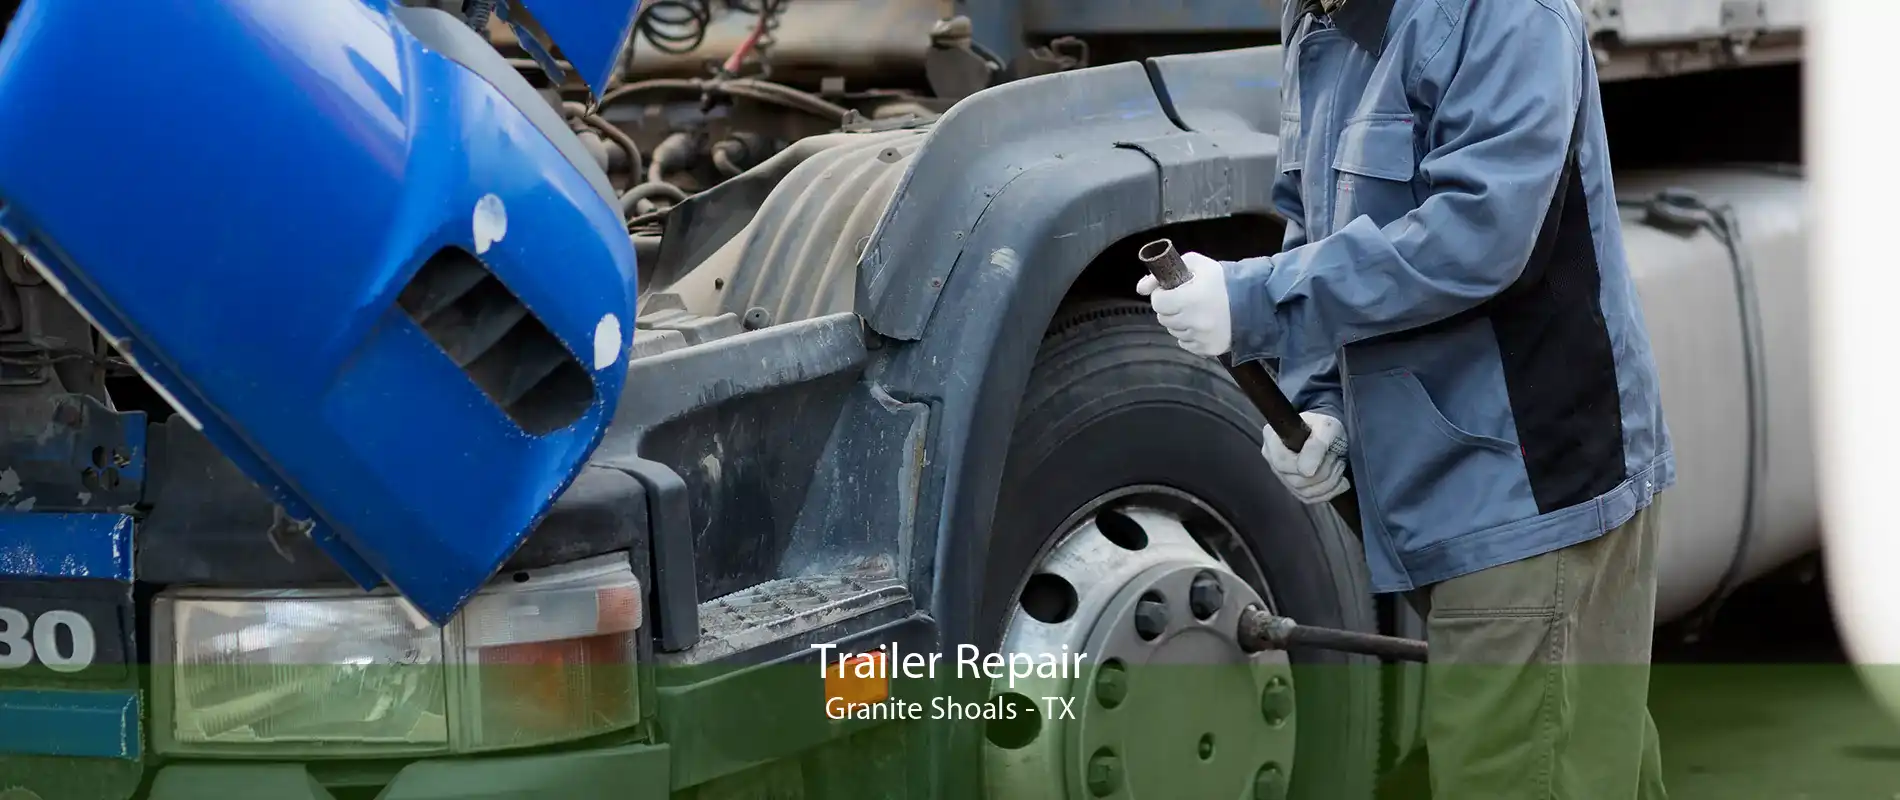 Trailer Repair Granite Shoals - TX